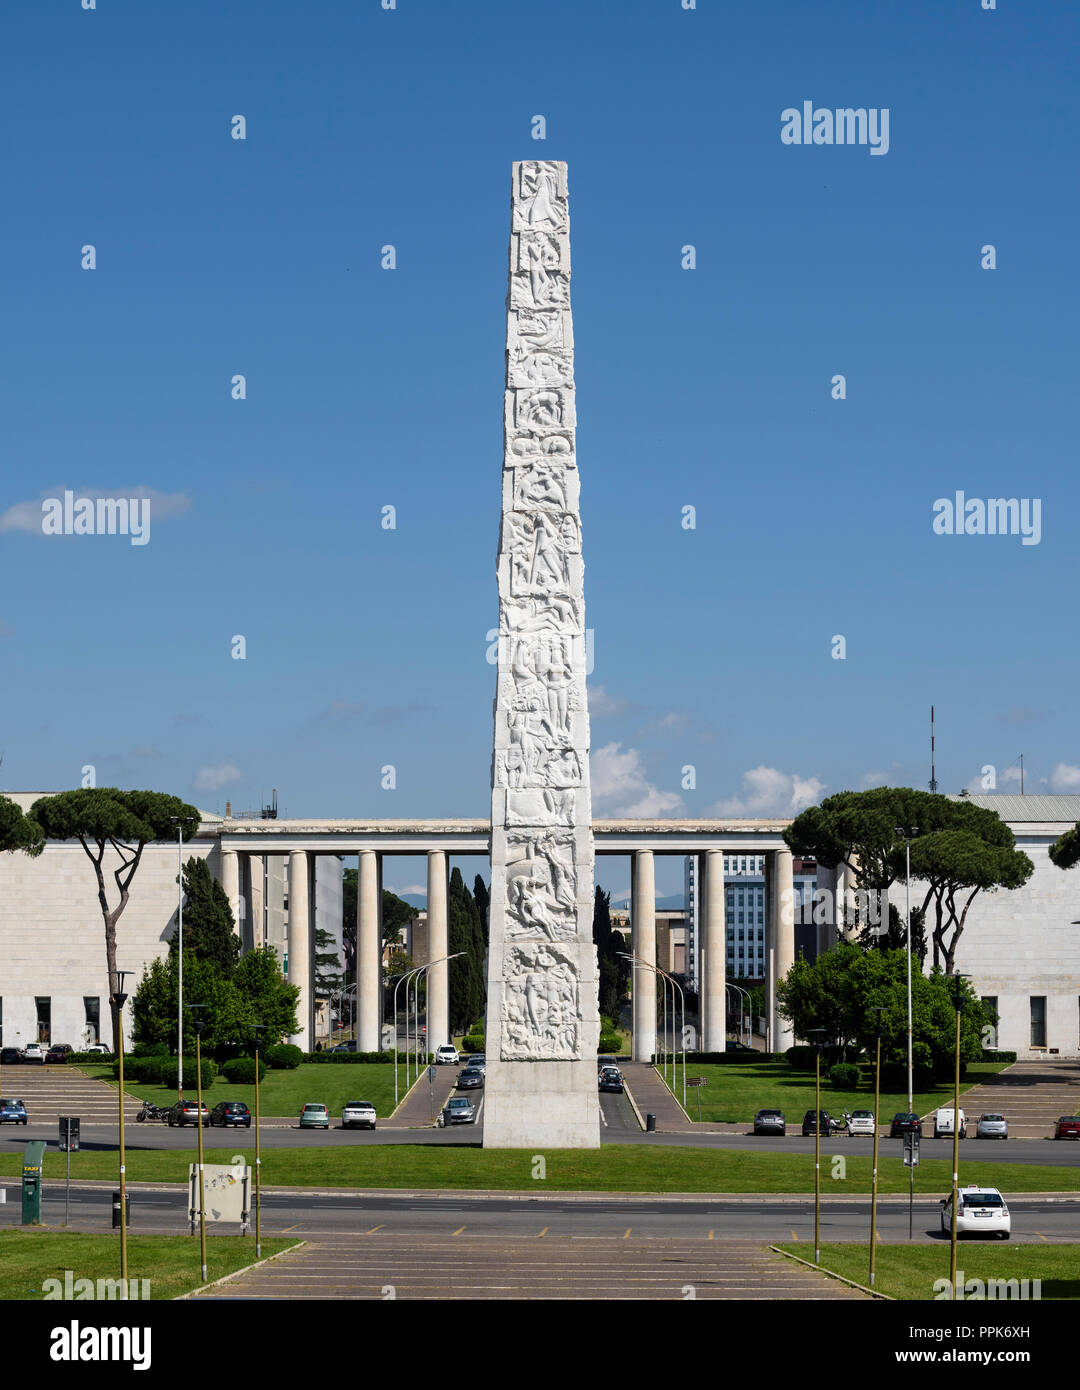 Roma. Italia. EUR. El obelisco dedicado a Guglielmo Marconi en el Piazza Guglielmo Marconi. El obelisco de 45 metros de altura realizado con hormigón armado Foto de stock